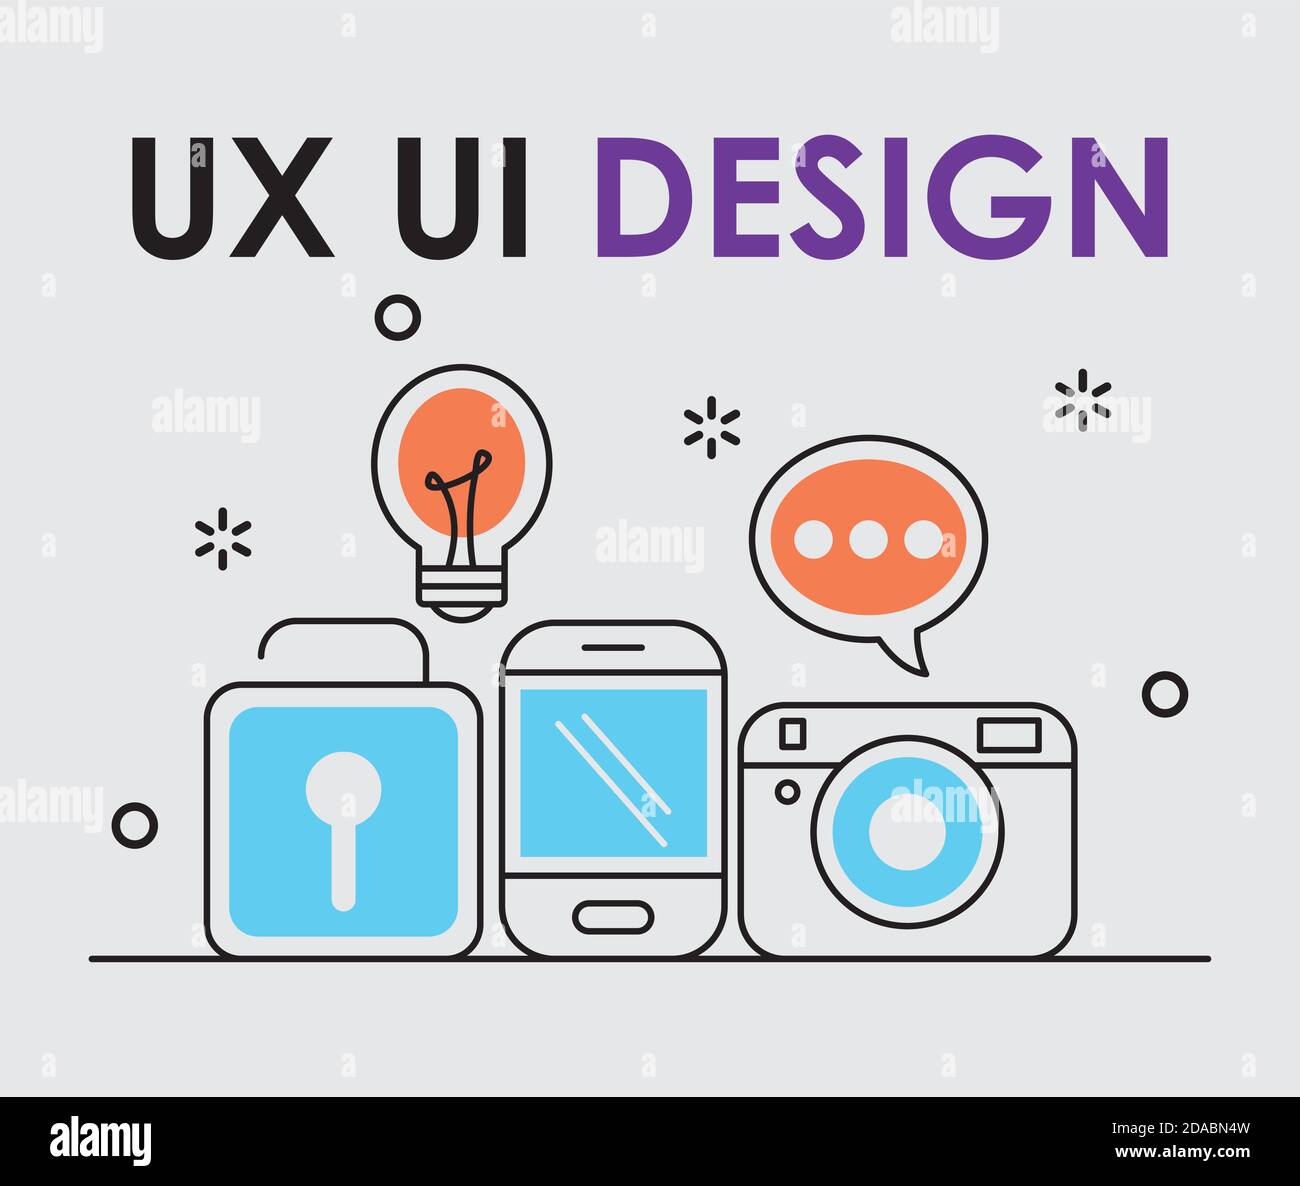 Hãy xem hình ảnh này để khám phá những thiết kế UX/UI tuyệt vời nhất. Thiết kế UX/UI là một lĩnh vực rất quan trọng trong thế giới kỹ thuật số và với hình ảnh này, bạn sẽ được chiêm ngưỡng những mẫu thiết kế độc đáo và sáng tạo nhất.